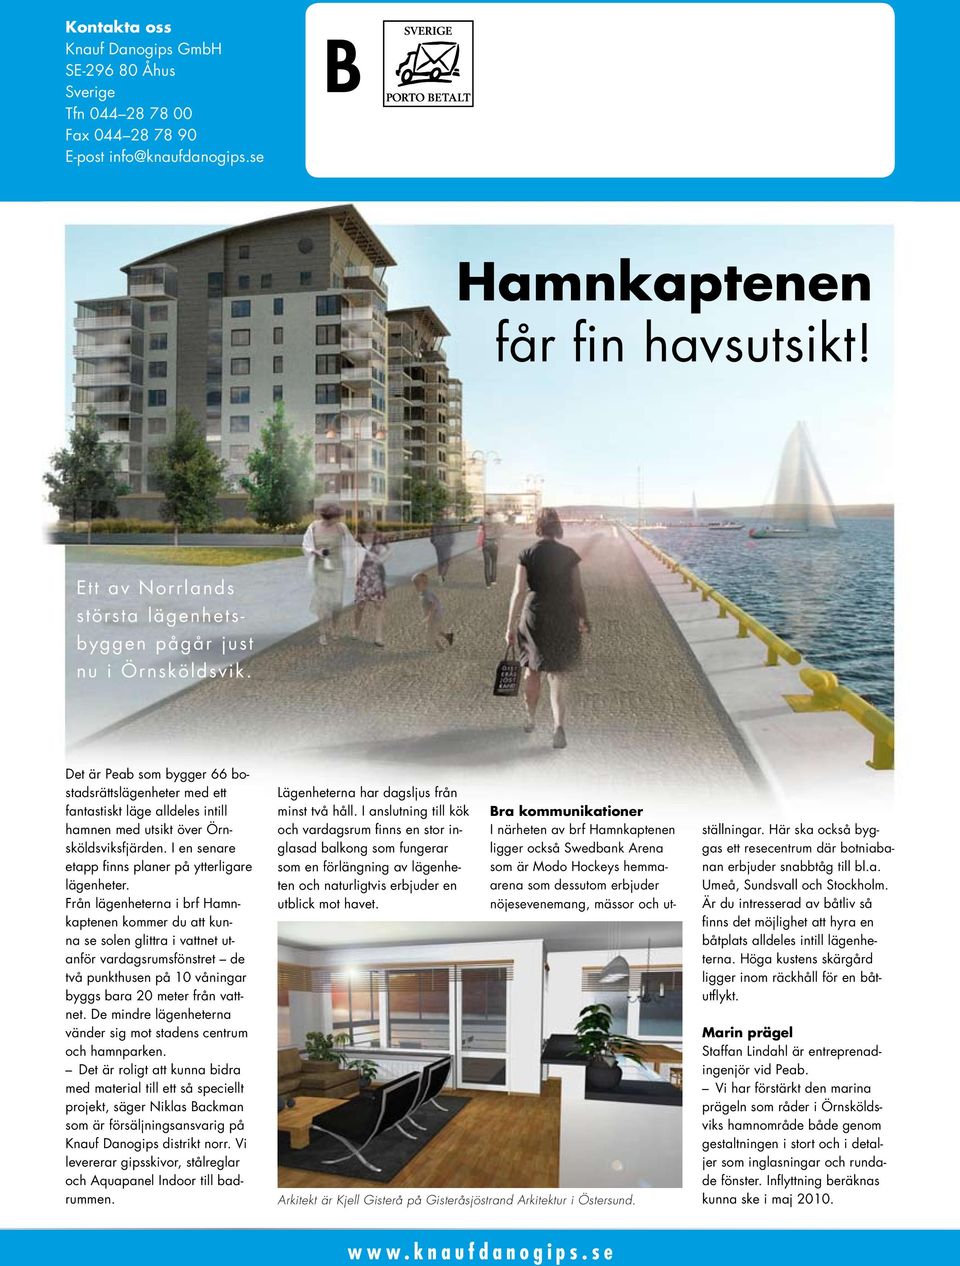 Det är Peab som bygger 66 bostadsrättslägenheter med ett fantastiskt läge alldeles intill hamnen med utsikt över Örnsköldsviksfjärden. I en senare etapp finns planer på ytterligare lägenheter.